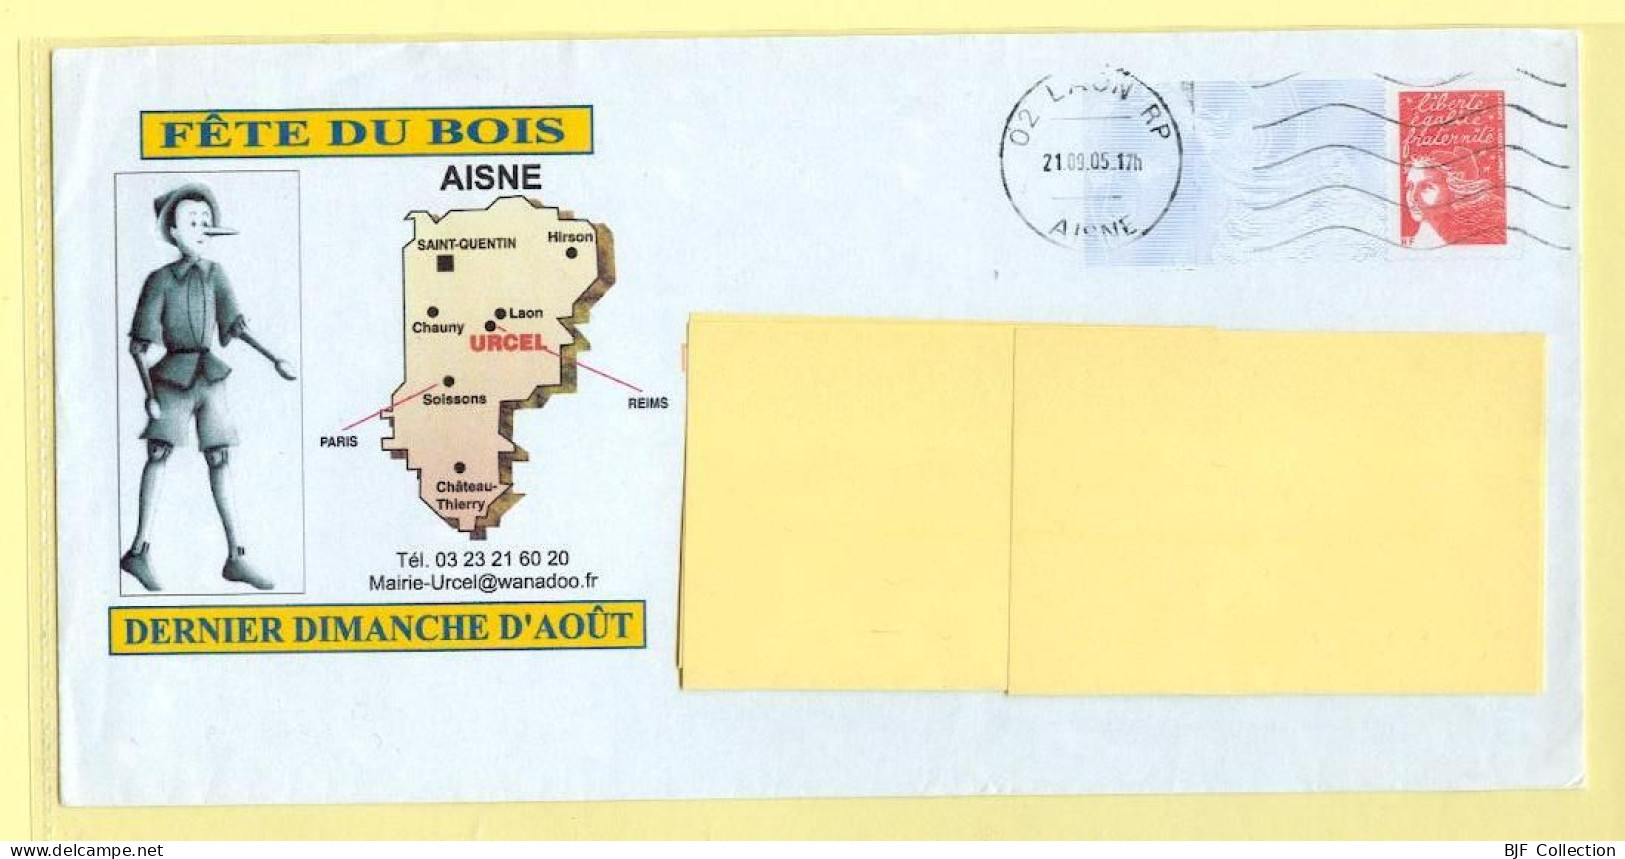 PAP Marianne De Luquet – URCEL (02) - FETE DU BOIS (N° 809 – Lot B2J/0306940) – 21/09/2005 - Prêts-à-poster: Repiquages /Luquet